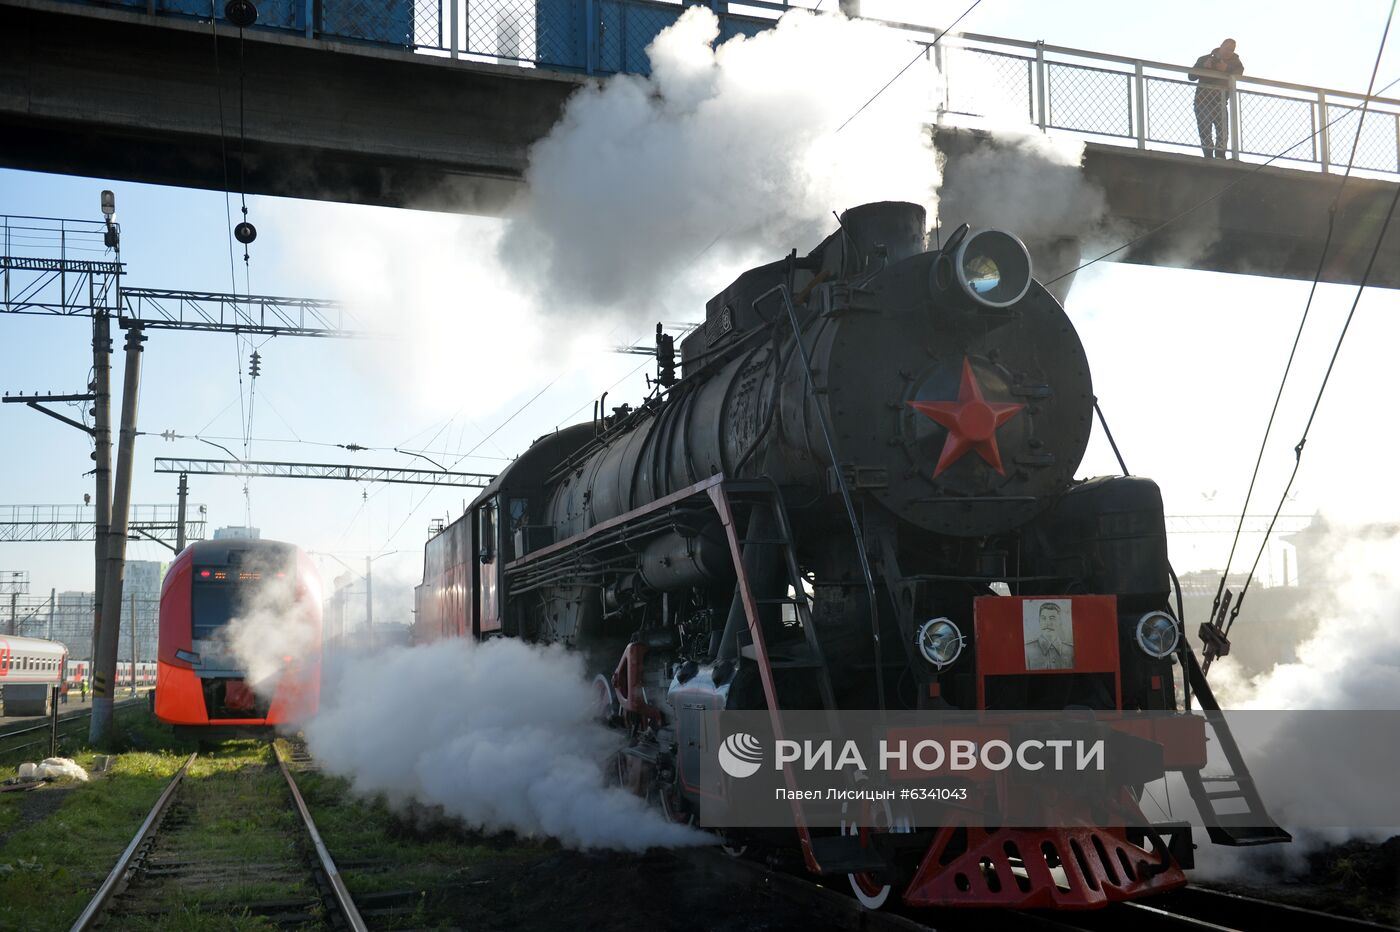 Подготовка ретро-паровоза к запуску по туристическому маршруту в Свердловской области